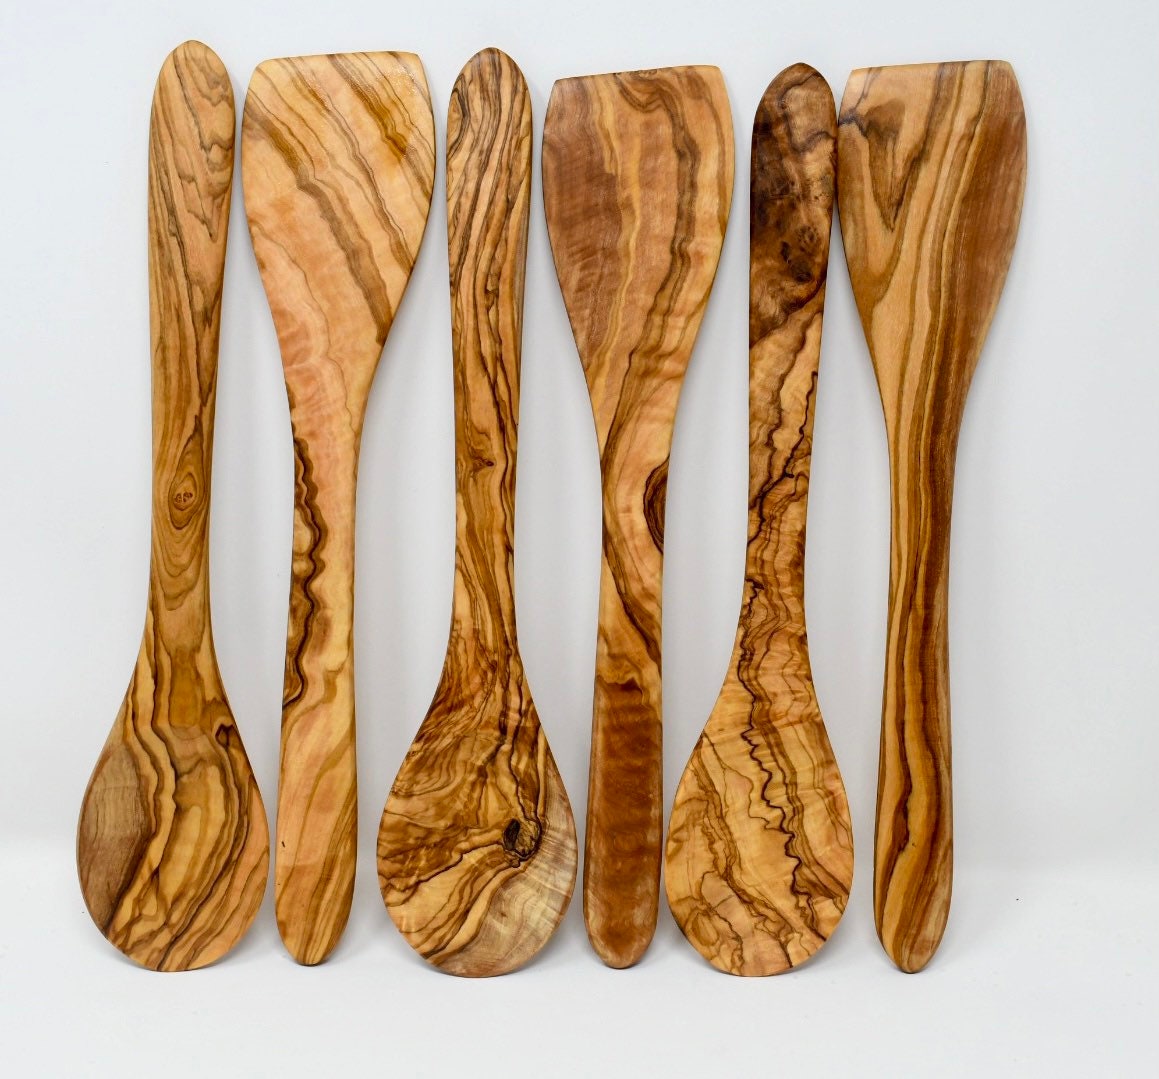 Simple Olive Wood Serving Utensils Set – Shop Our Favorites